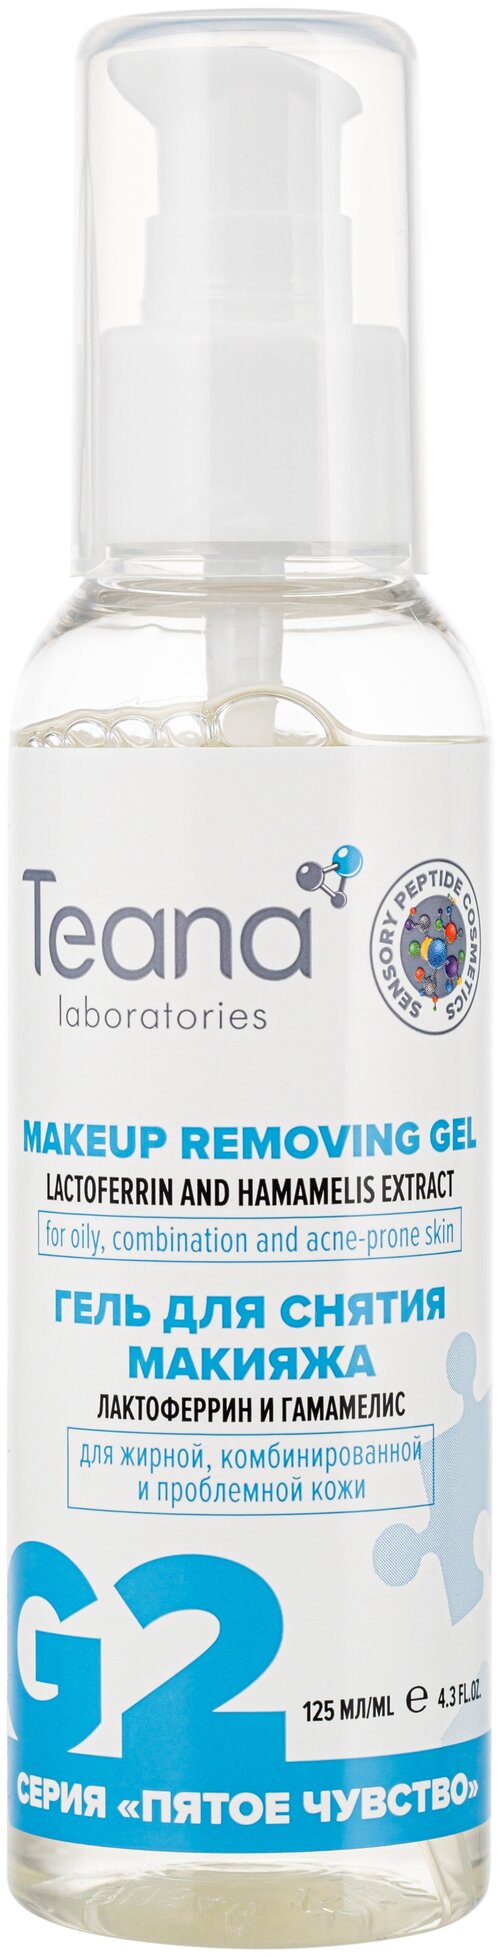 Teana G2 Гель для снятия макияжа с лактоферриномдля жирной, комбинированной и проблемной кожи, 125 мл